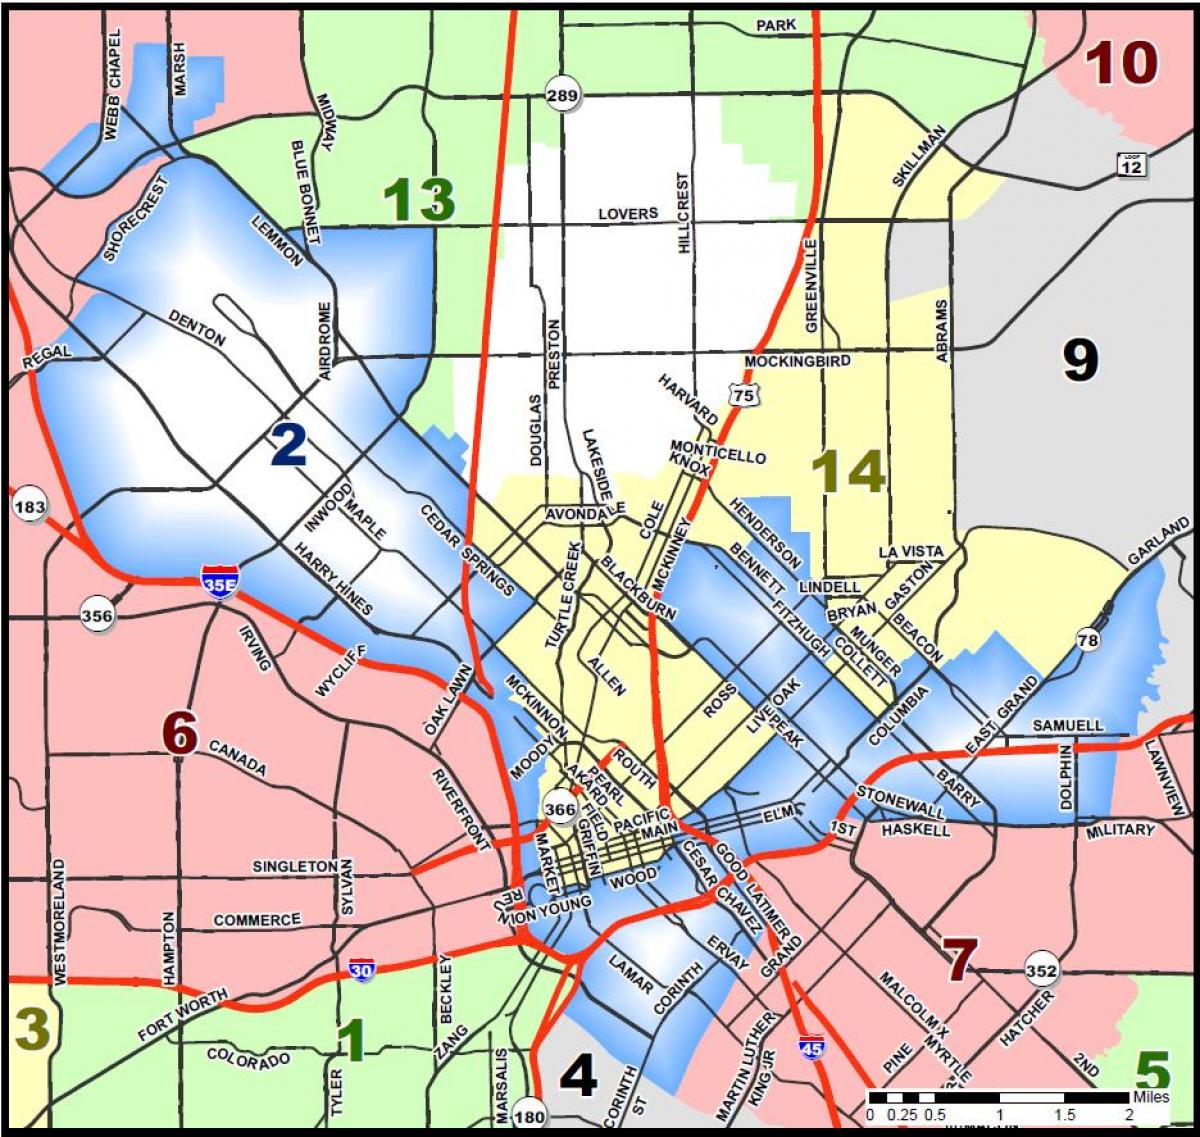 Dallas საკრებულო მუნიციპალიტეტის რუკა